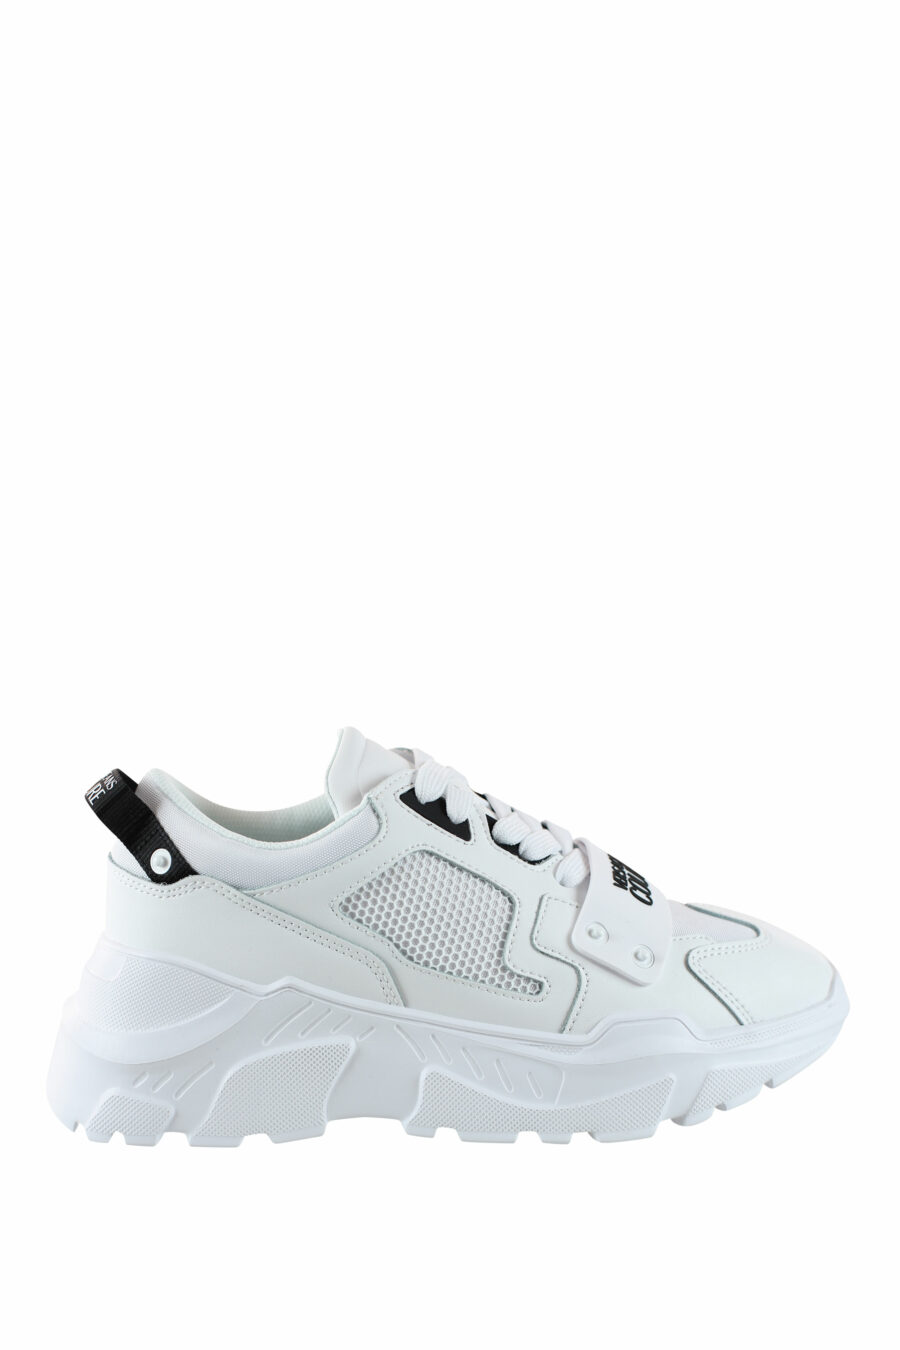 Zapatillas blancas "speedtrack" con detalles negros - IMG 4548